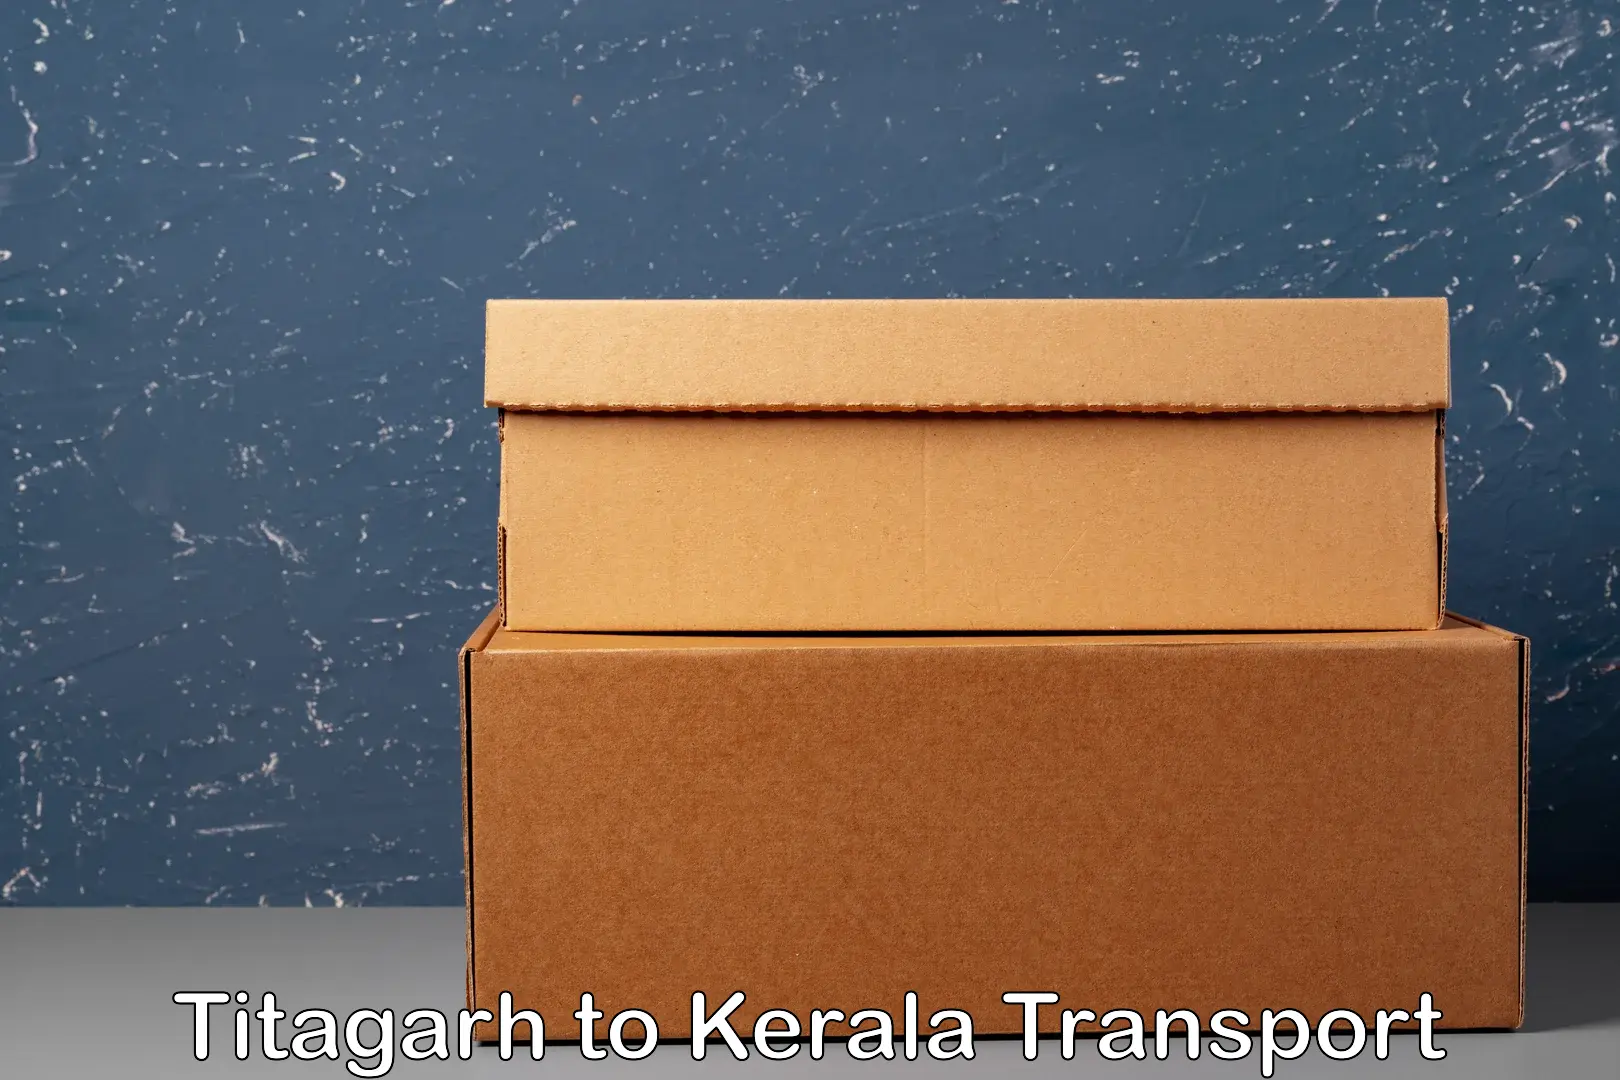 Delivery service Titagarh to Kochi